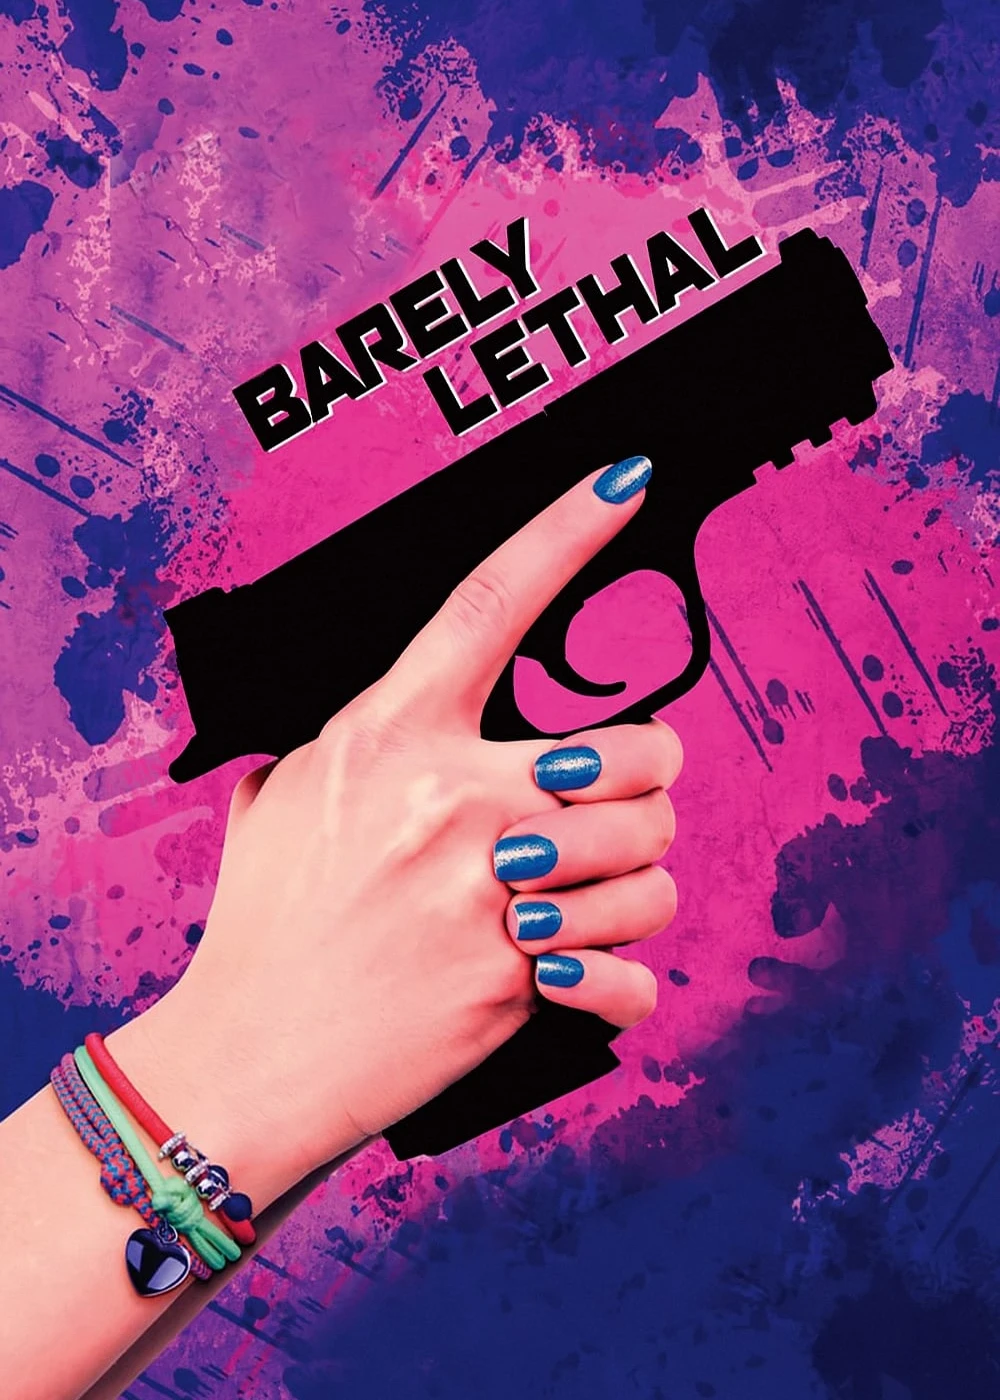 Đặc Vụ Ku-te | Barely Lethal (2015)